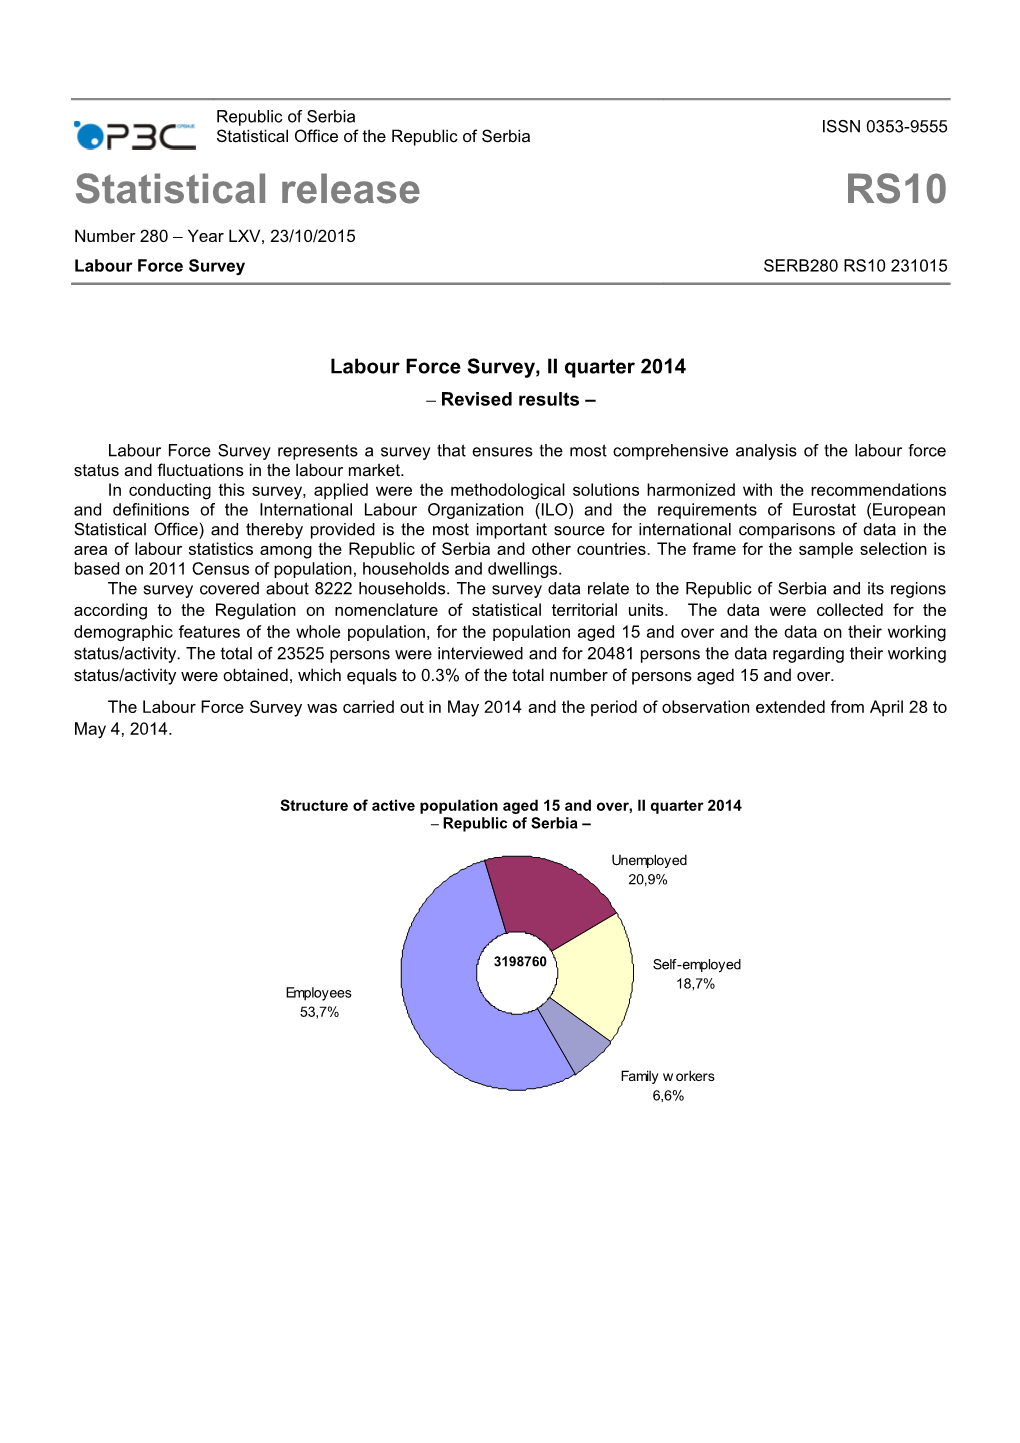 Labour Force Survey, II Quarter 2014